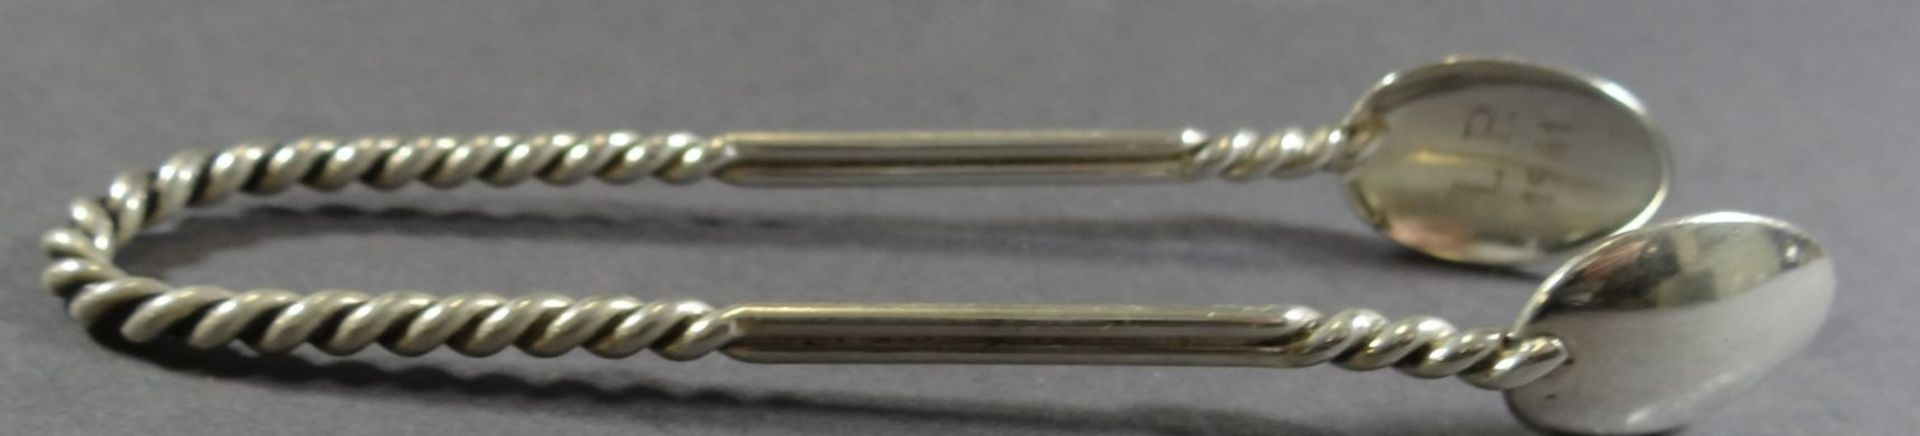 Zuckerzange, Silber-800-, Wilkens, , L-10,5 cm, 18 gr. - Image 3 of 6